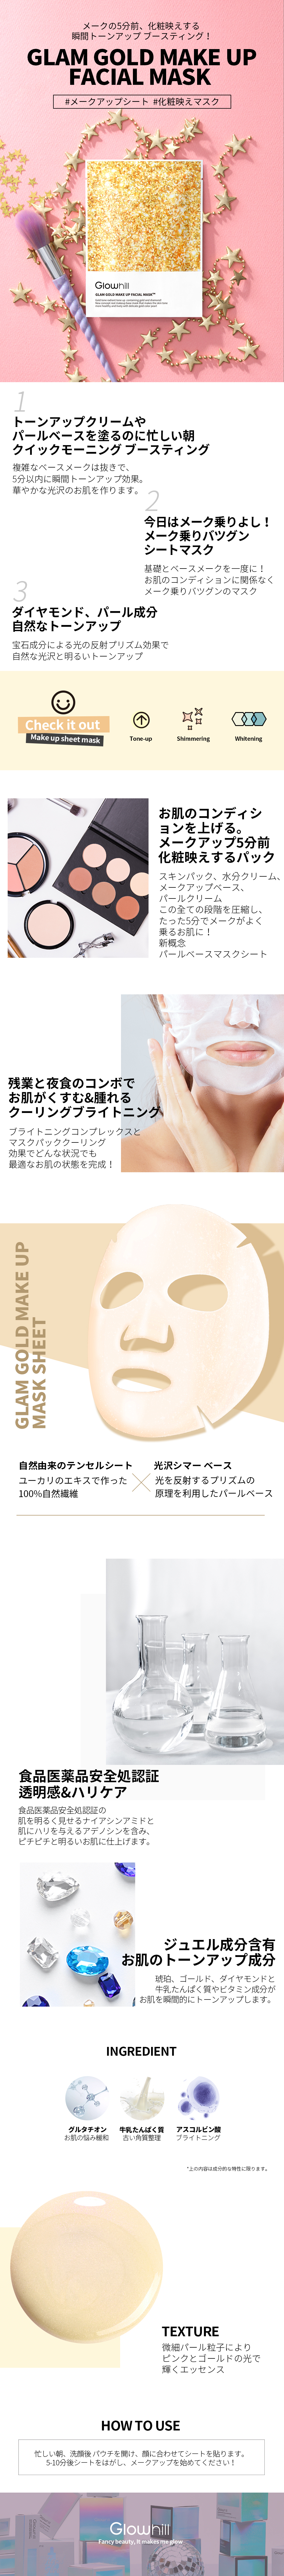 [グロウヒル]グラムゴールドメイクアップフェイシャルマスク | 詳細画像2